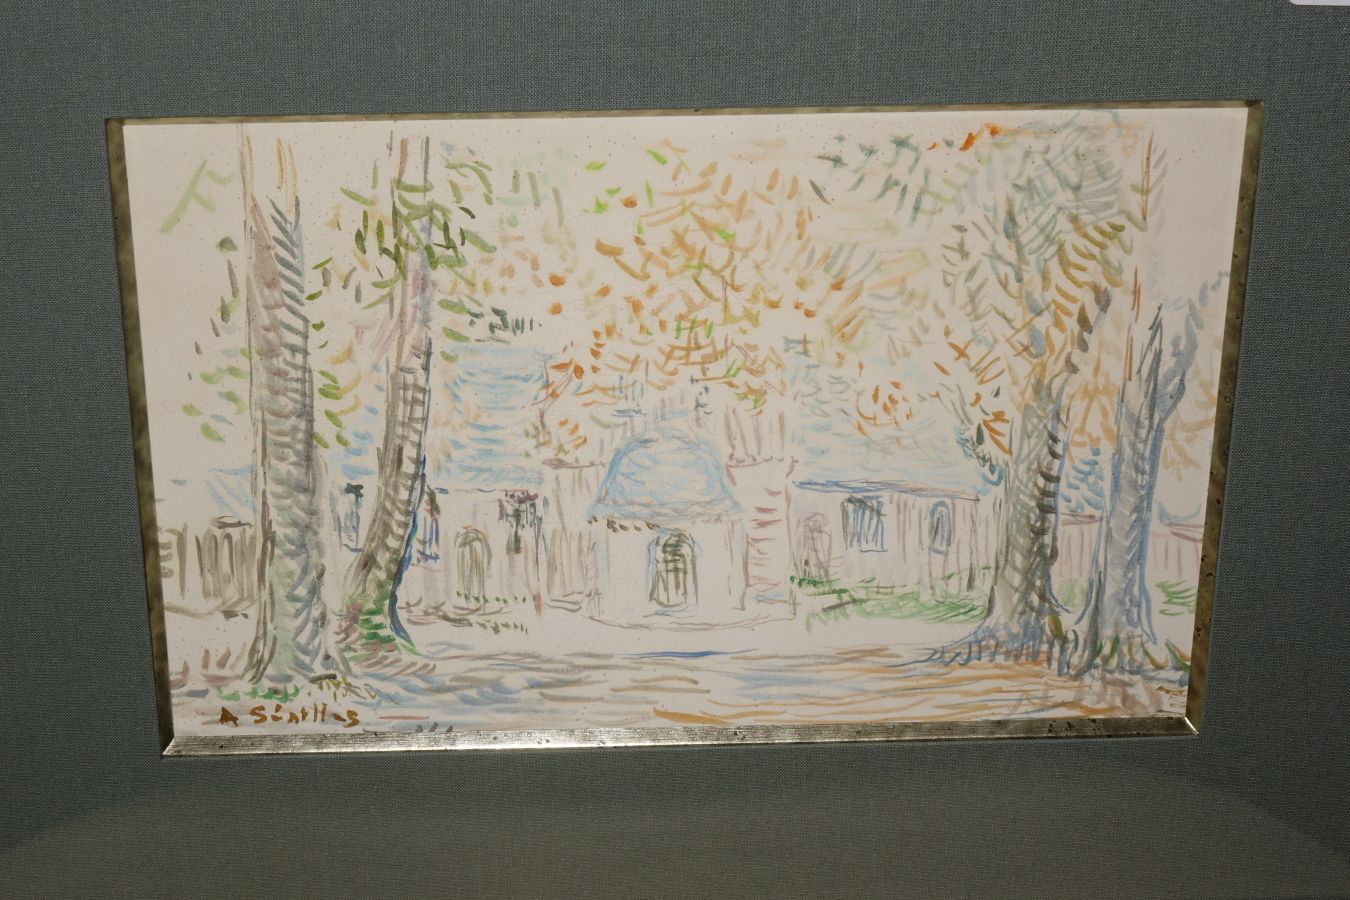 Null 安德烈-西尔斯(1891-1983)

房子与树木

水彩画左下角签名

16.5 x 25.5厘米